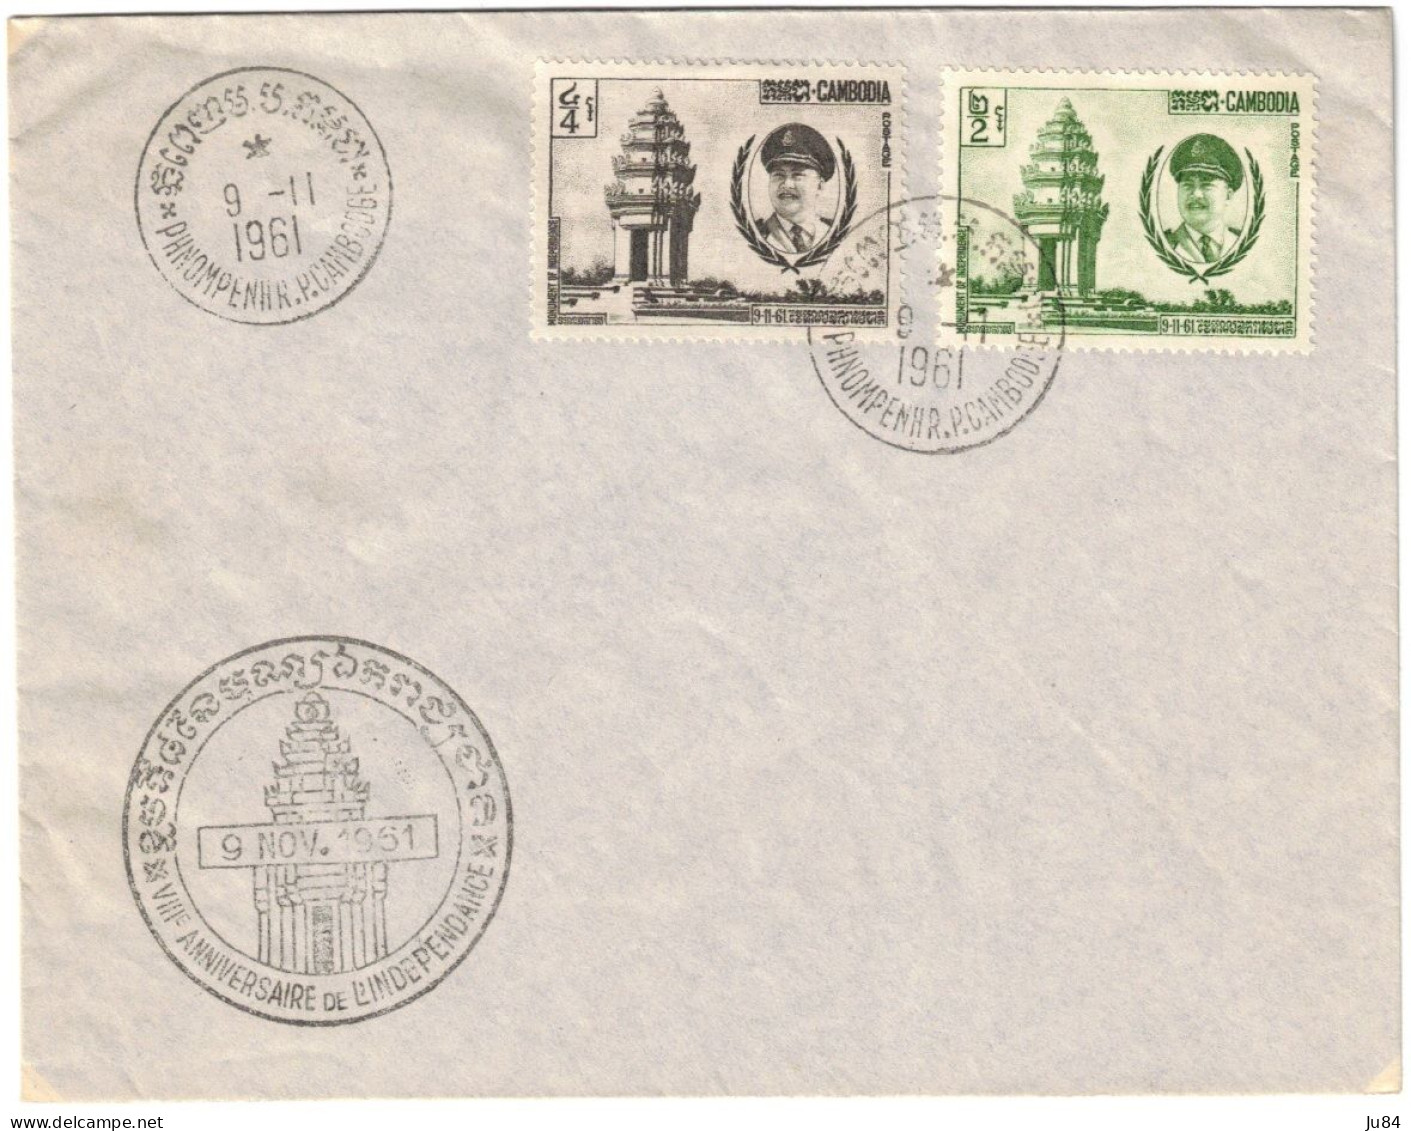 Cambodge - Phnom-Penh R.P. - VIIIe Anniversaire De L'Indépendance - Poste Aérienne - Belle Lettre - 9 Novembre 1961 - Cambodge